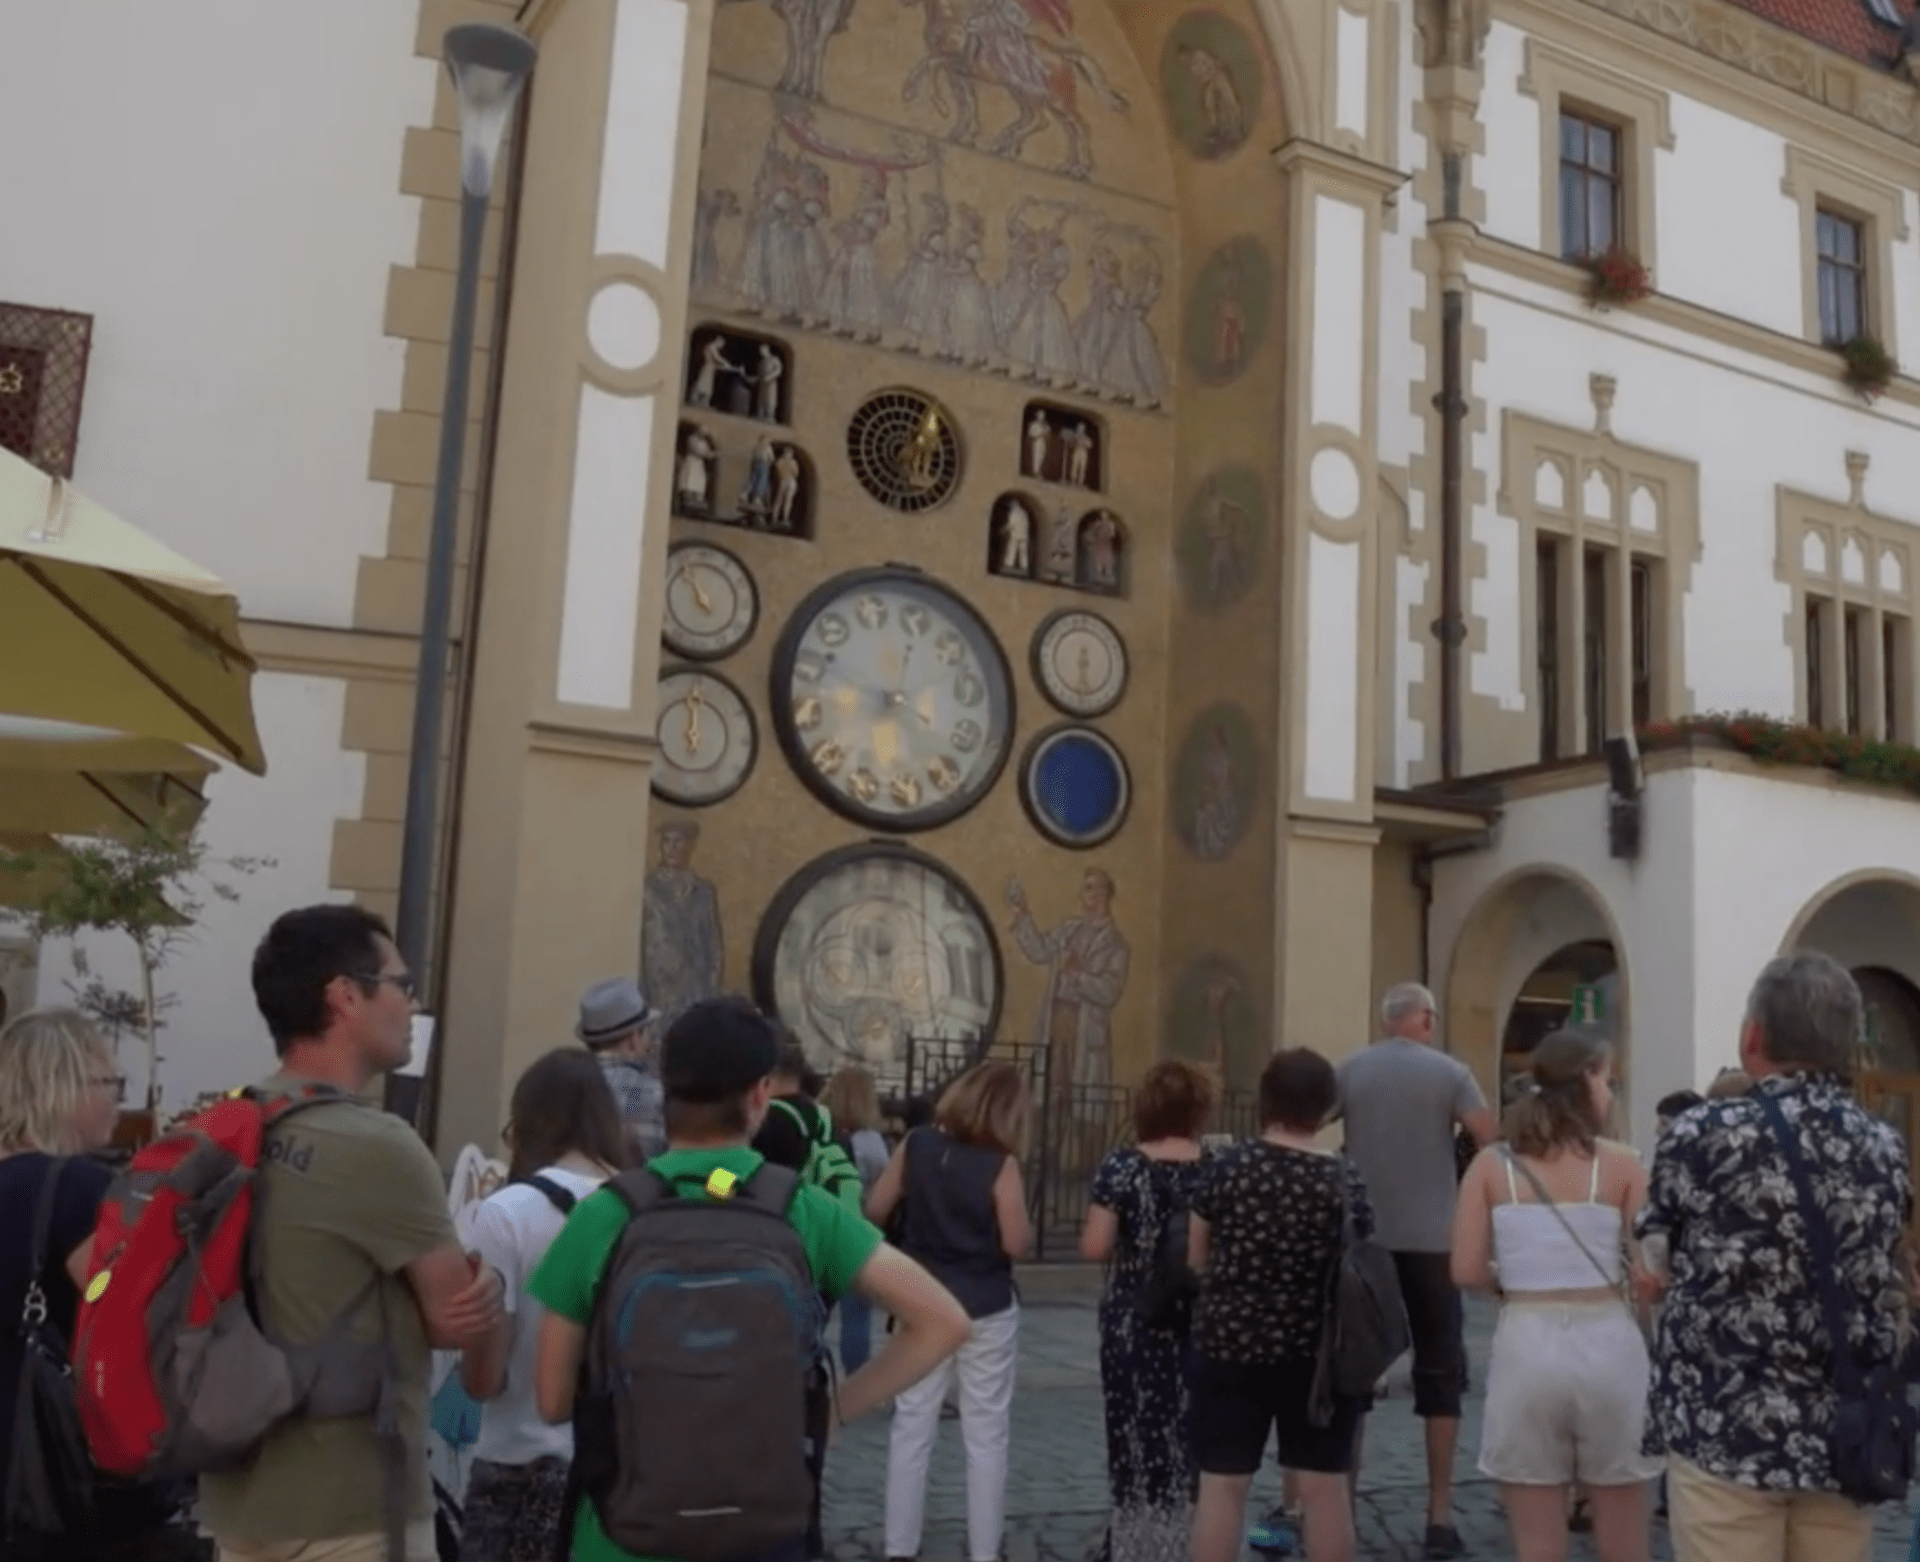 Olomoucký orloj v obležení turistů